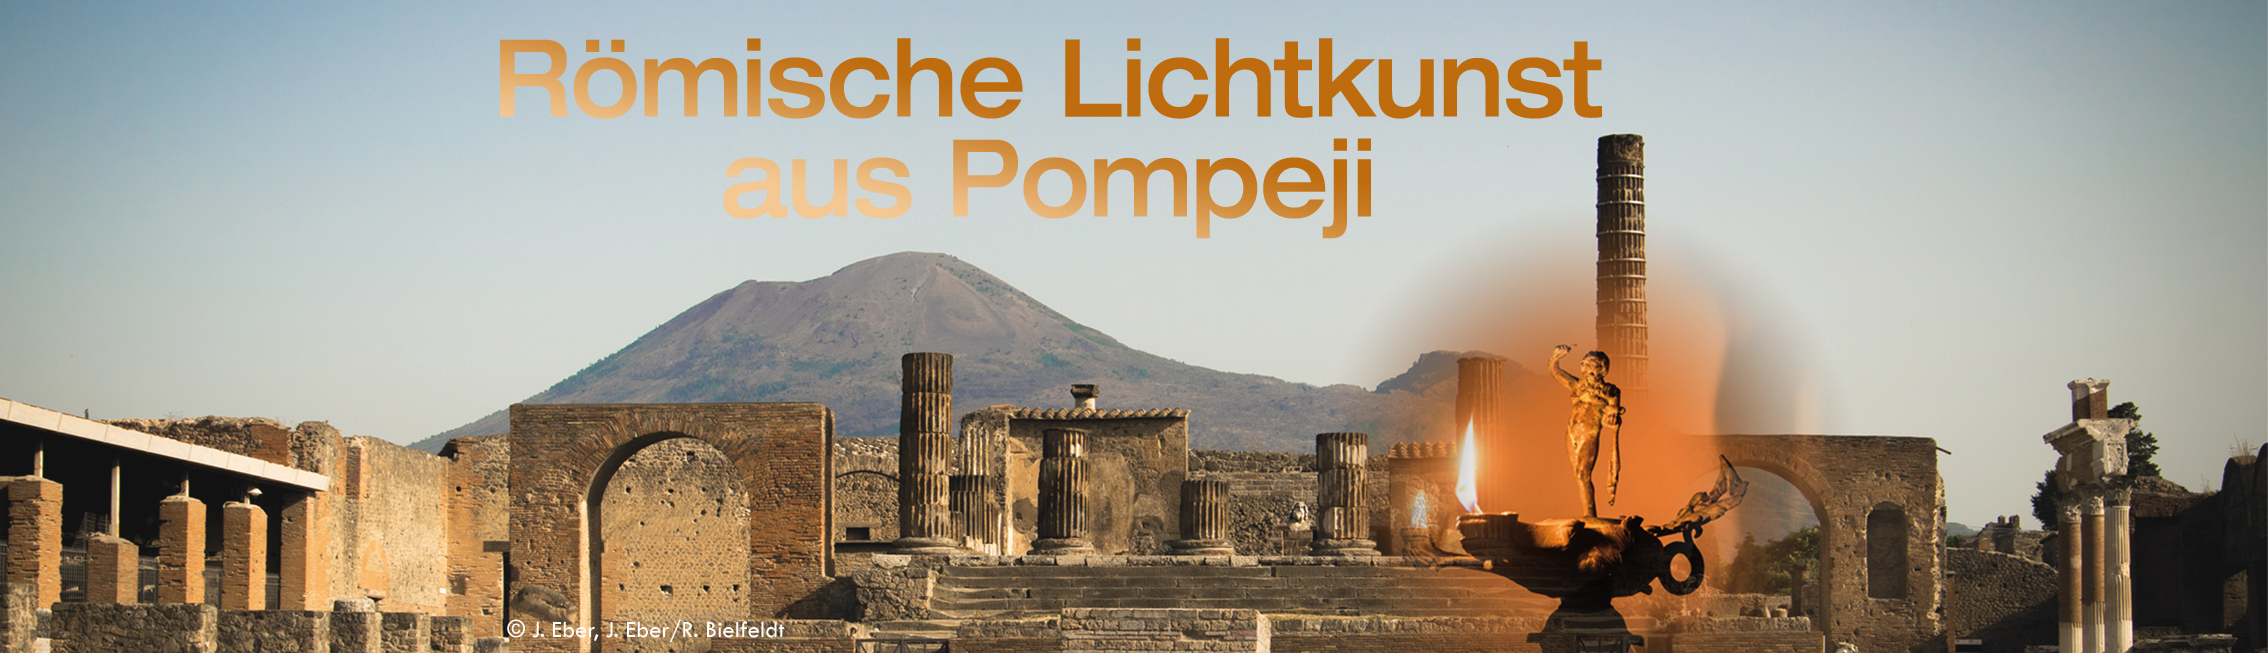 Bühne_Neues Licht aus Pompeji_HP_schmal Kopie